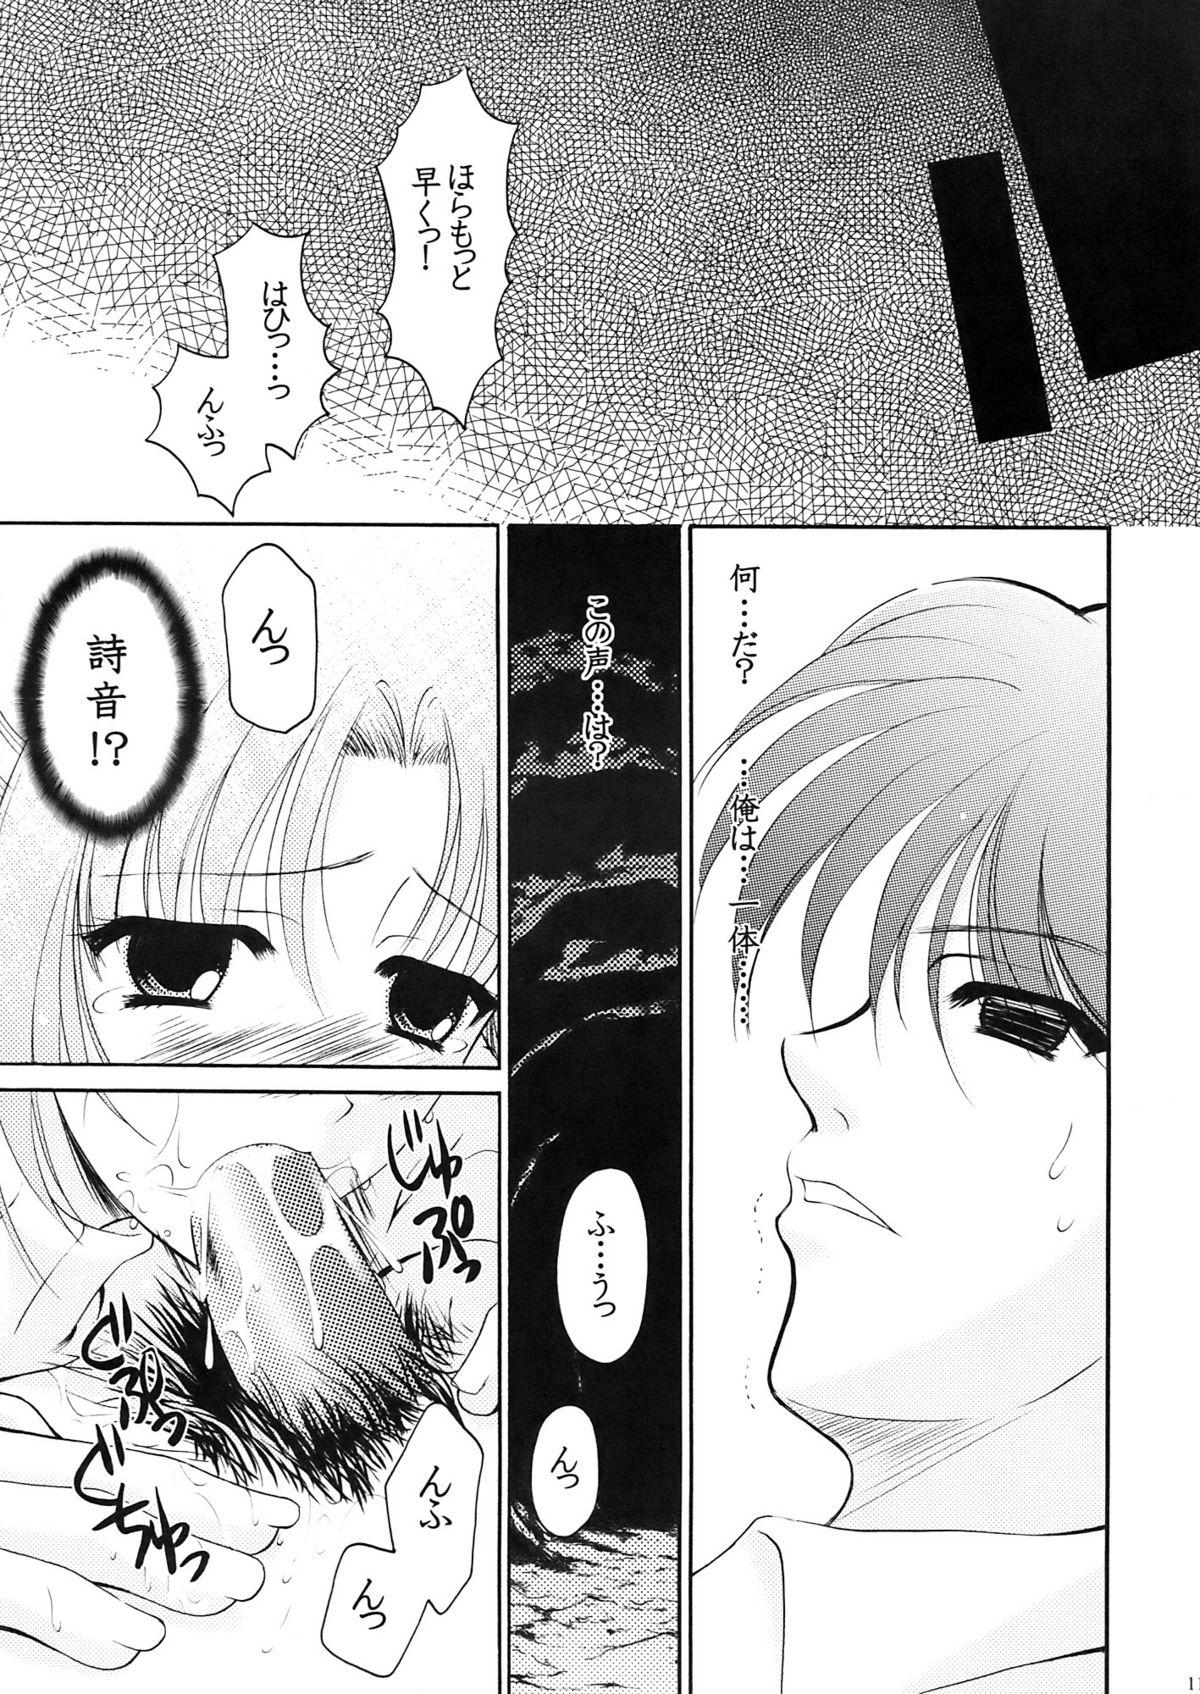 Girlfriend Higupan 3 - Higurashi no naku koro ni Married - Page 10